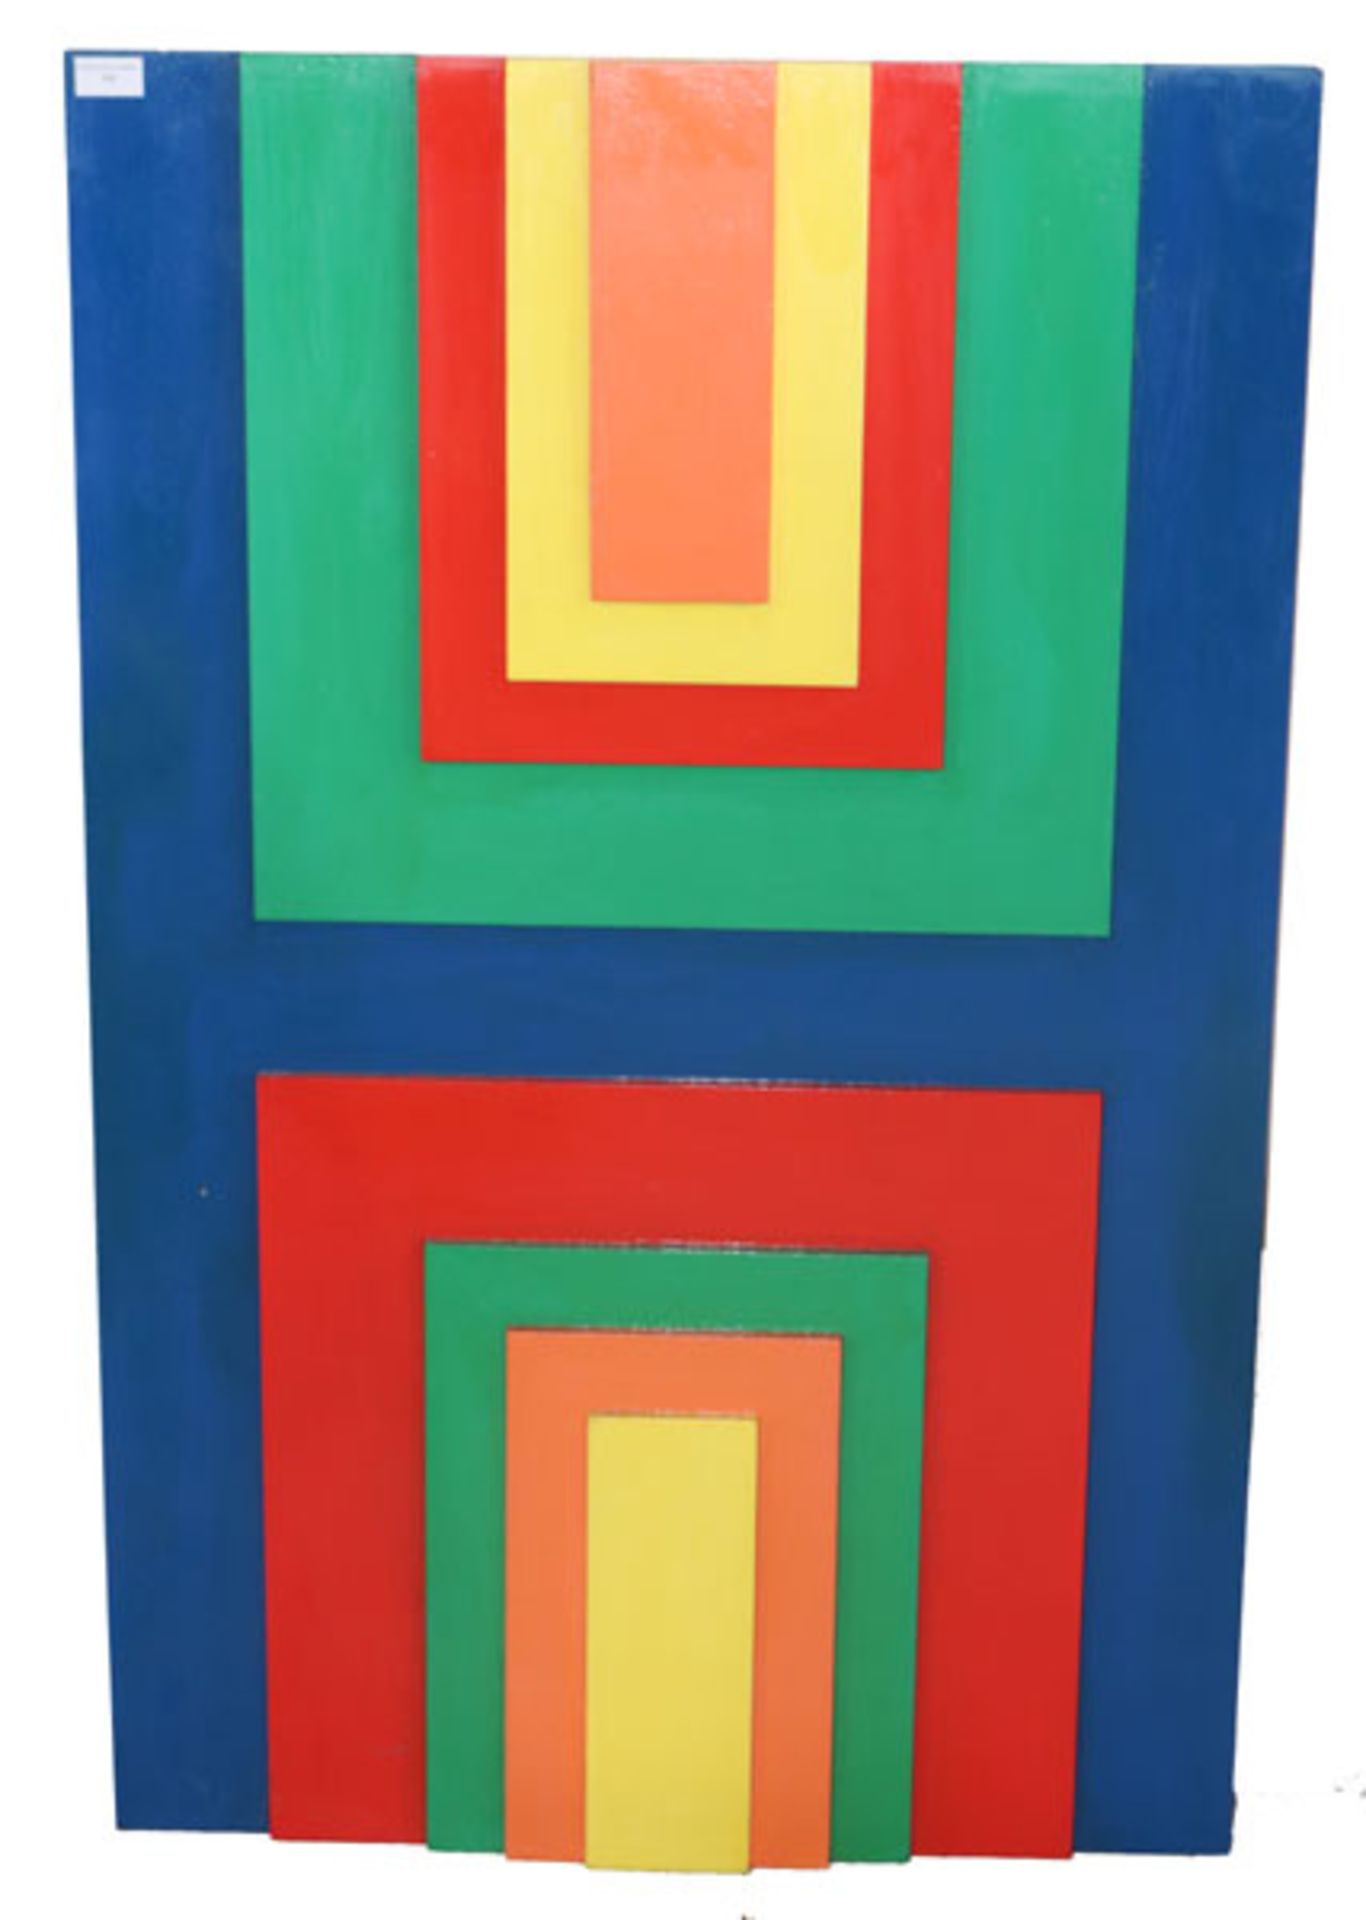 Holzobjekt in 5 Farben von Rudolf Härtel, * 1930 München - lebt in Garmisch-Partenkirchen, studierte